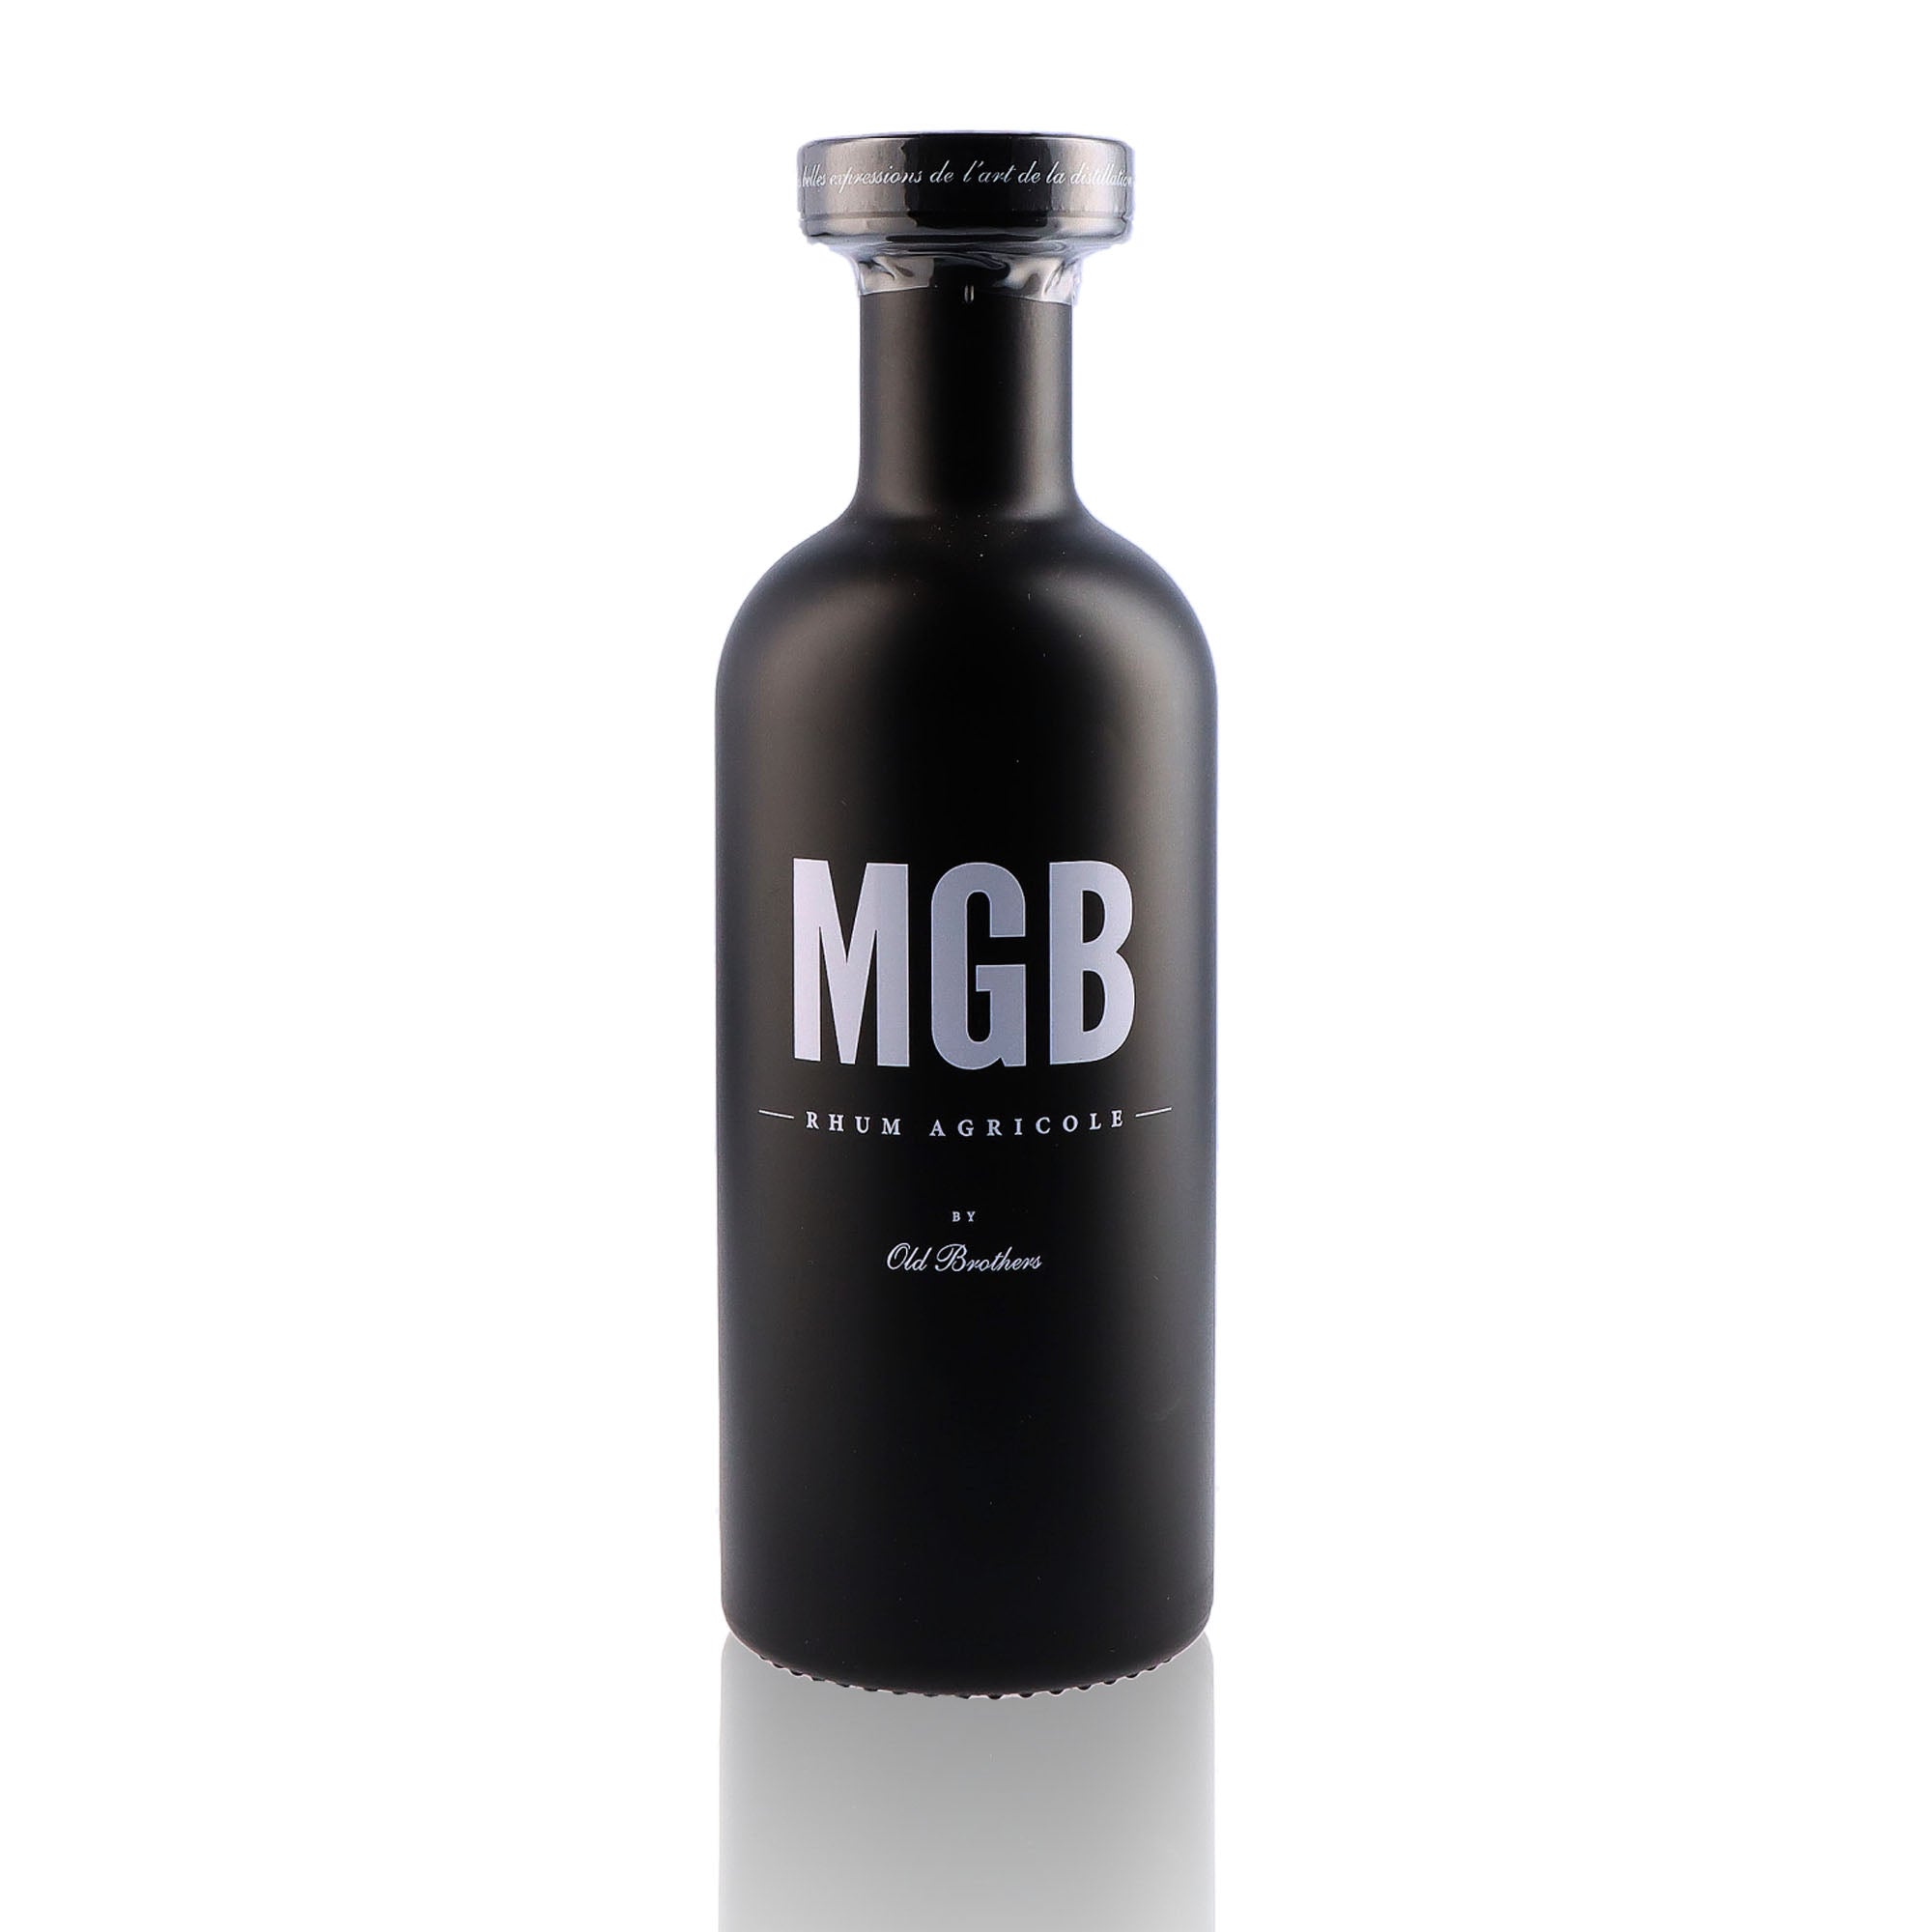 Une bouteille de rhum agricole, de la marque Old Brothers, nommée MGB.